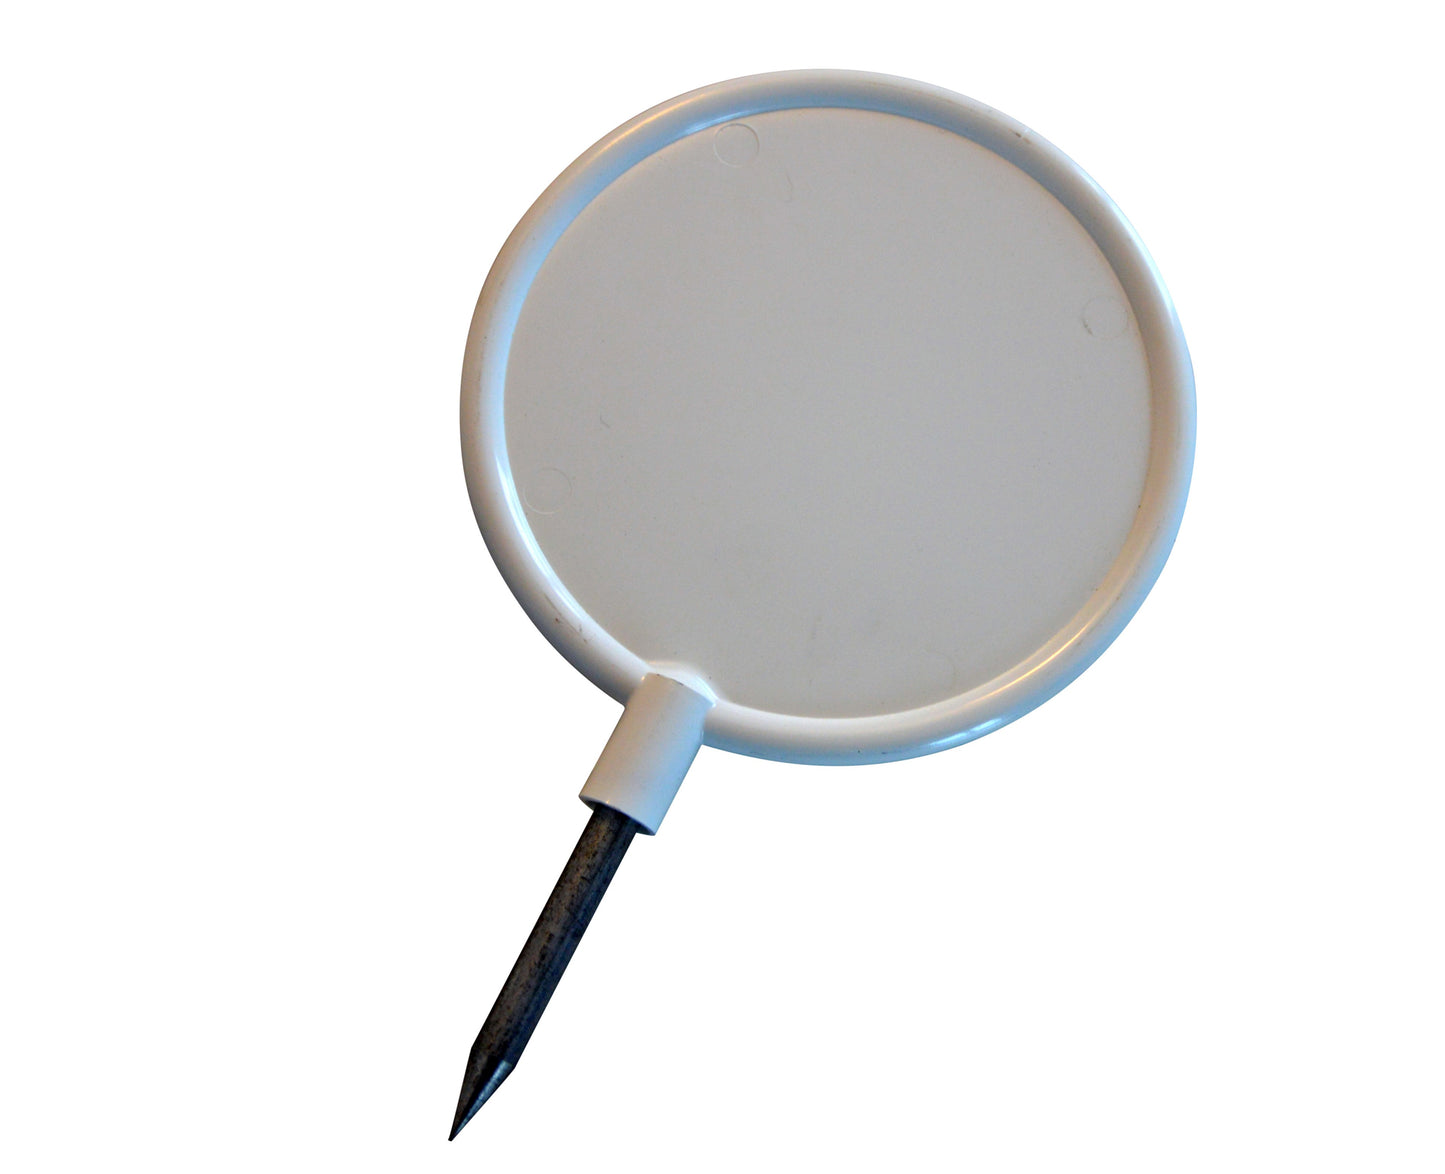 Tee Marker Round, Ø 12 cm (4.7"), white